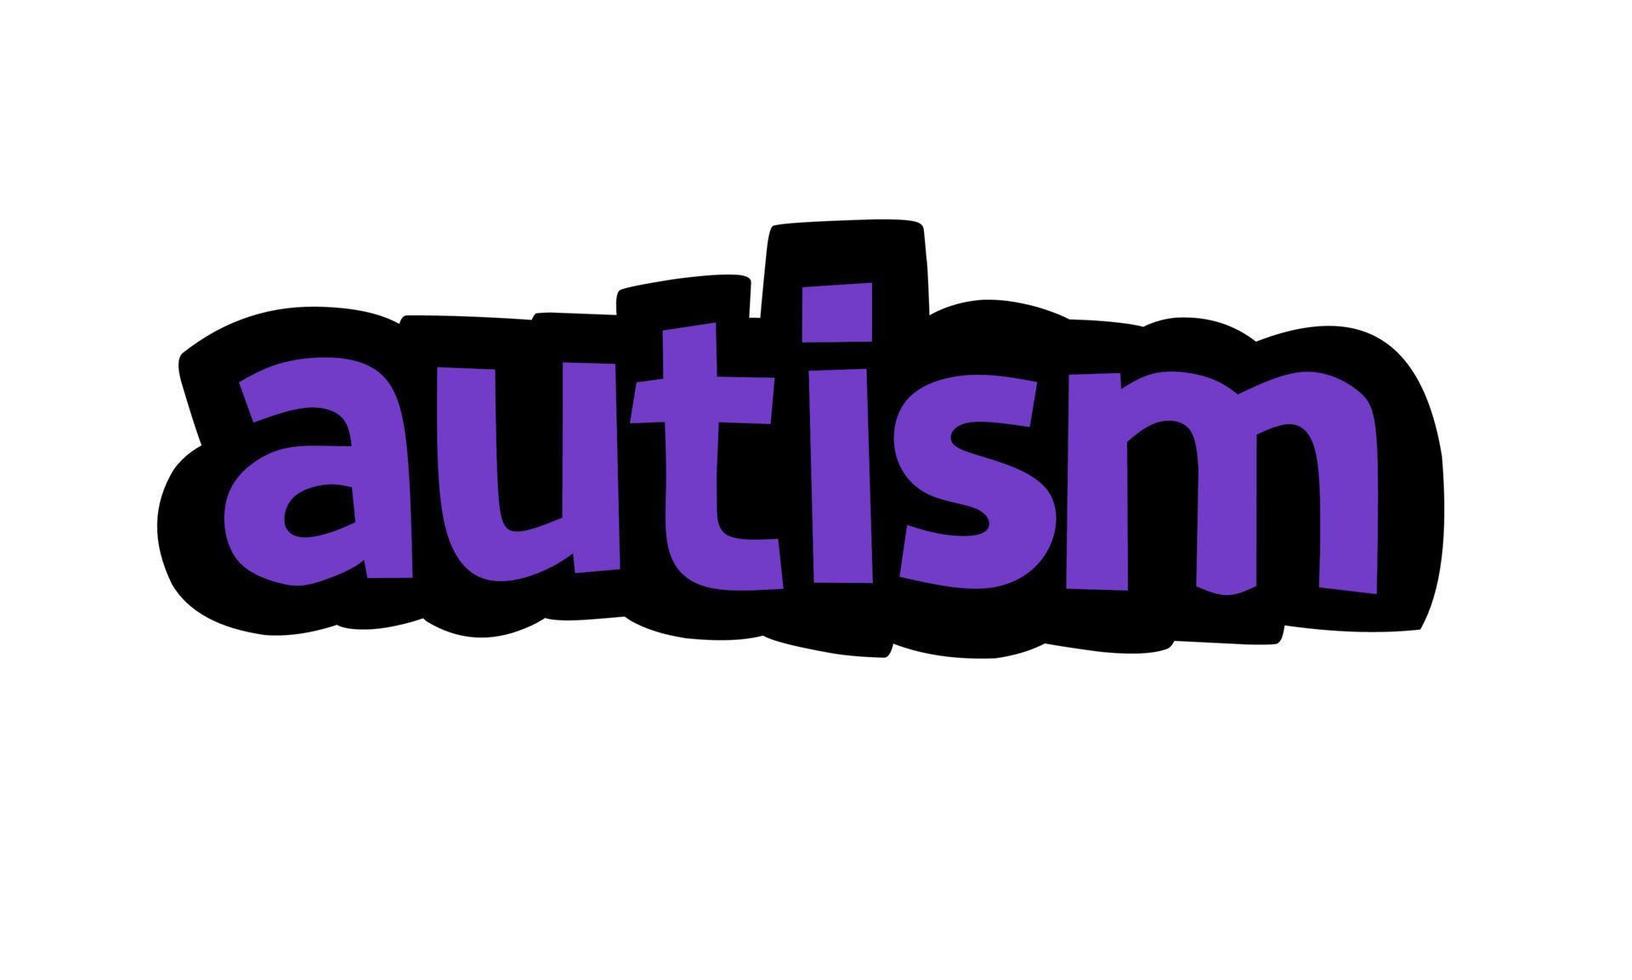 autisme schrijven vector ontwerp op witte achtergrond